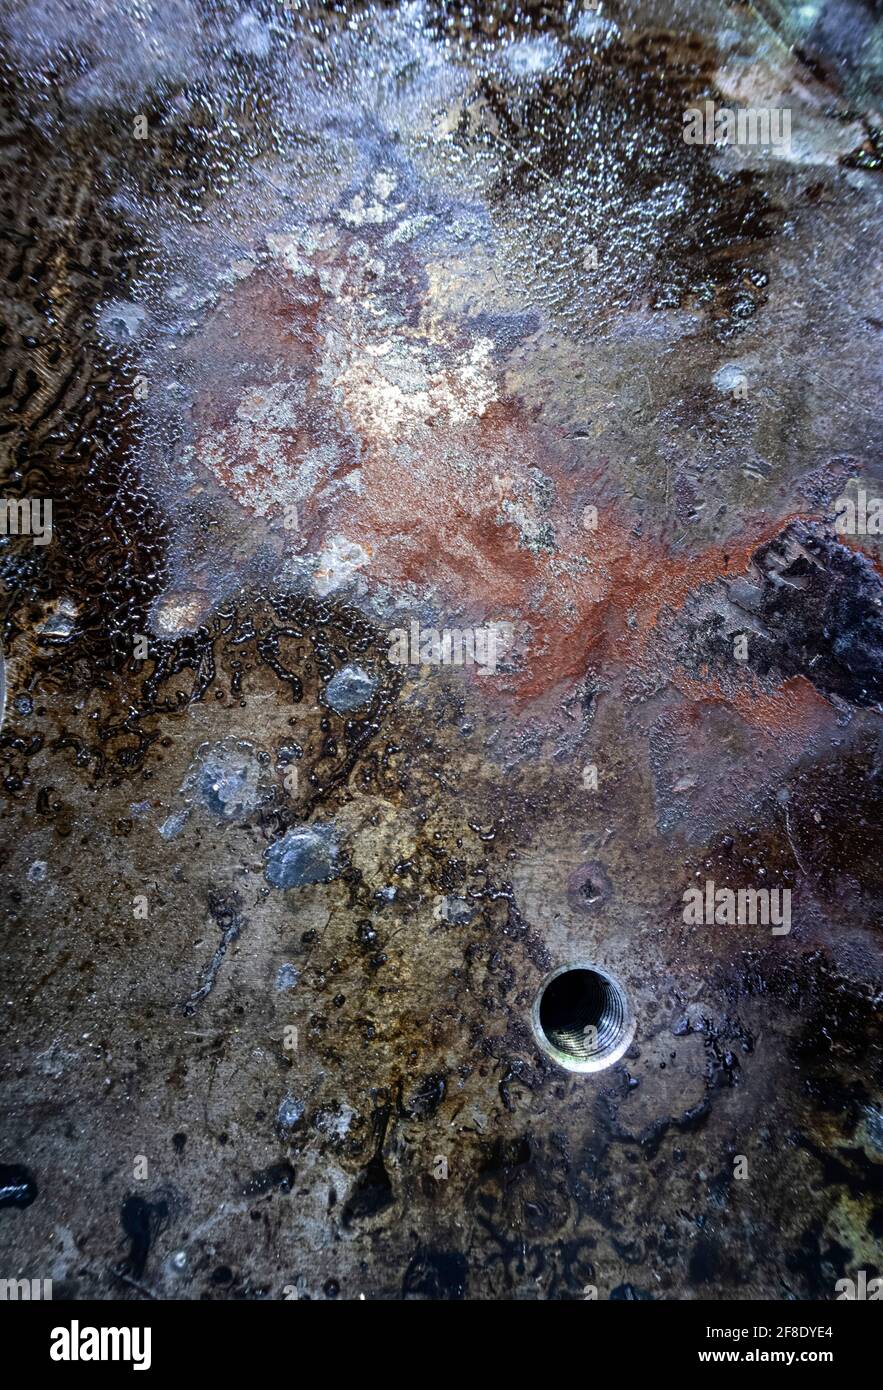 Detail einer verrosteten und ölgebeizten Stahlplatte mit Gewindebohrung, verrostete Metallstruktur, Ähnlichkeit mit einer Galaxie von Sternen Stockfoto